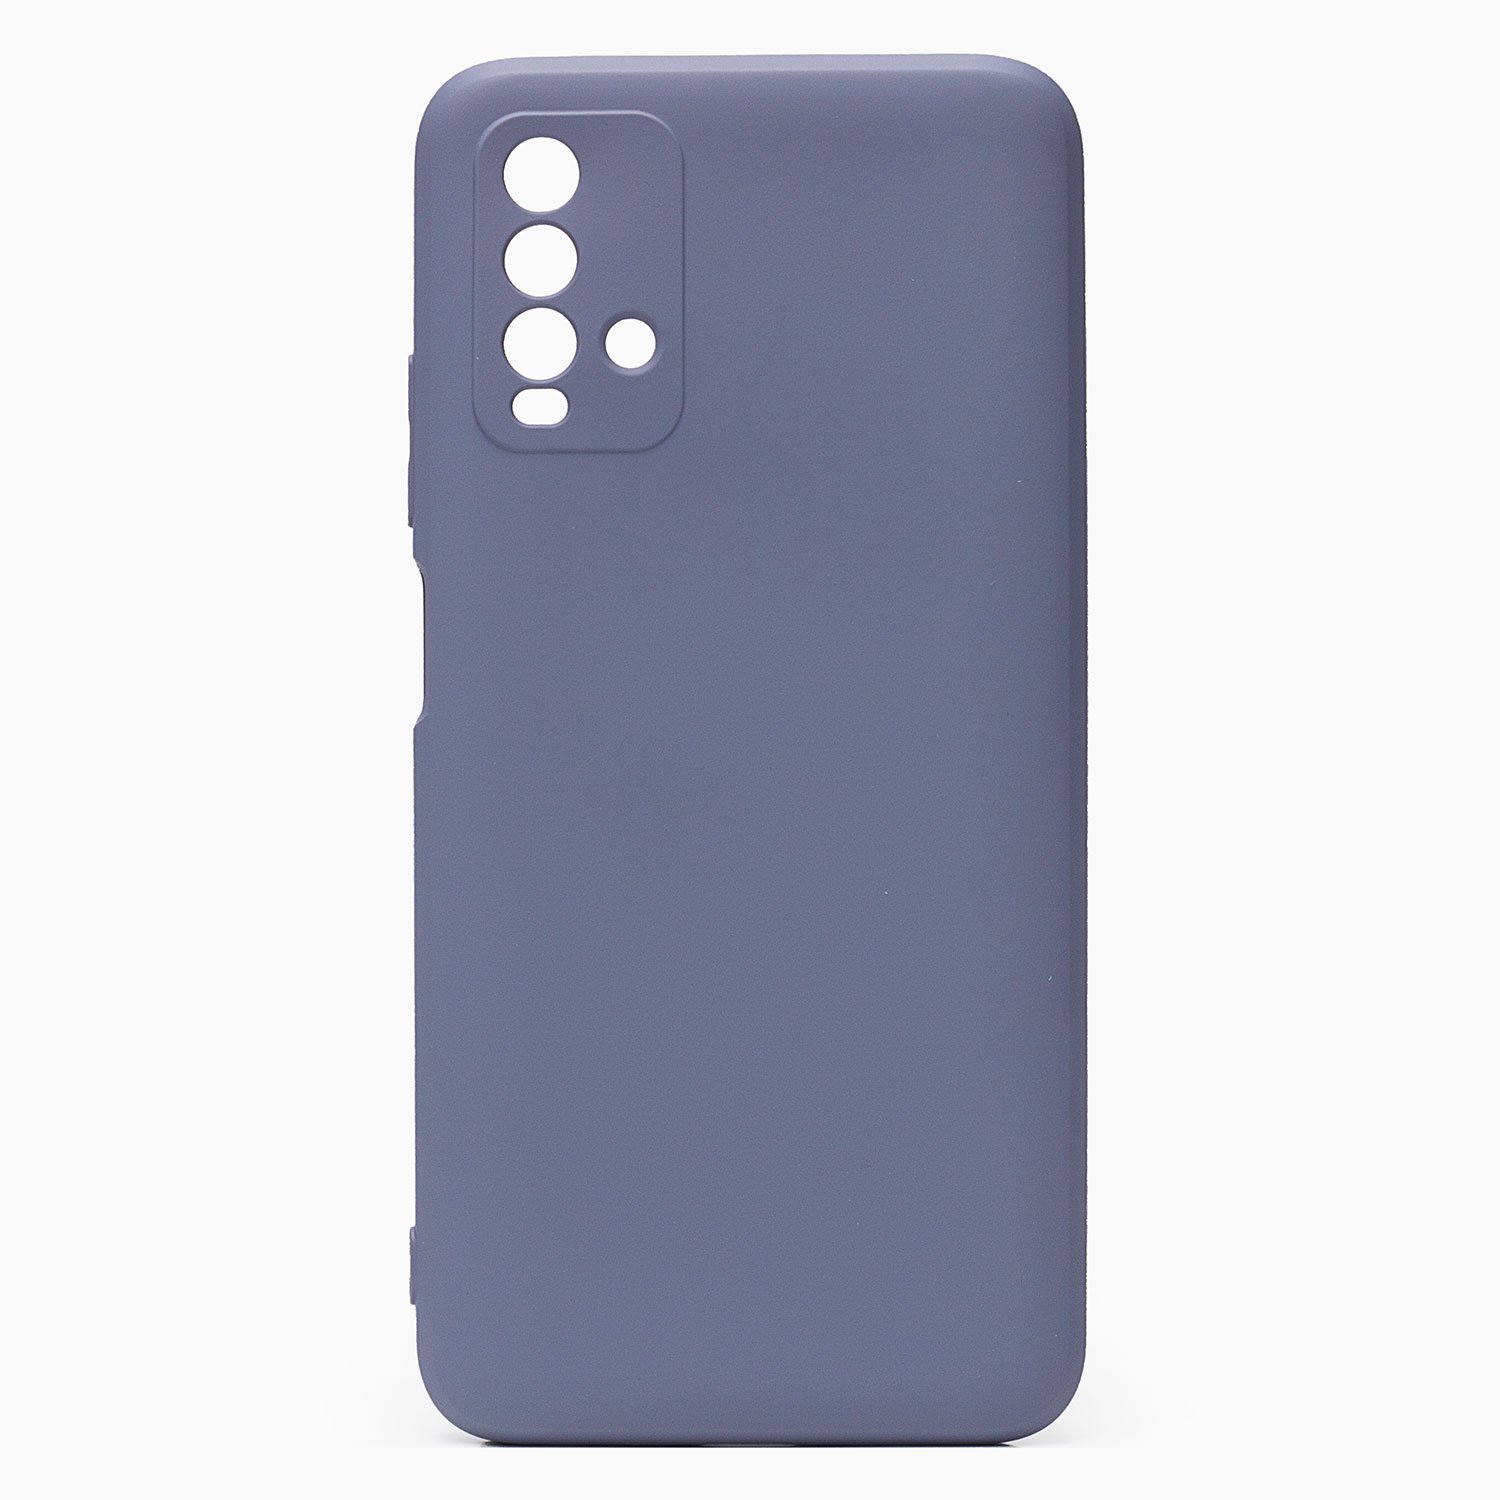 Чехол-накладка Activ Full Original Design для смартфона Xiaomi Redmi 9T, силикон, серый (128924)